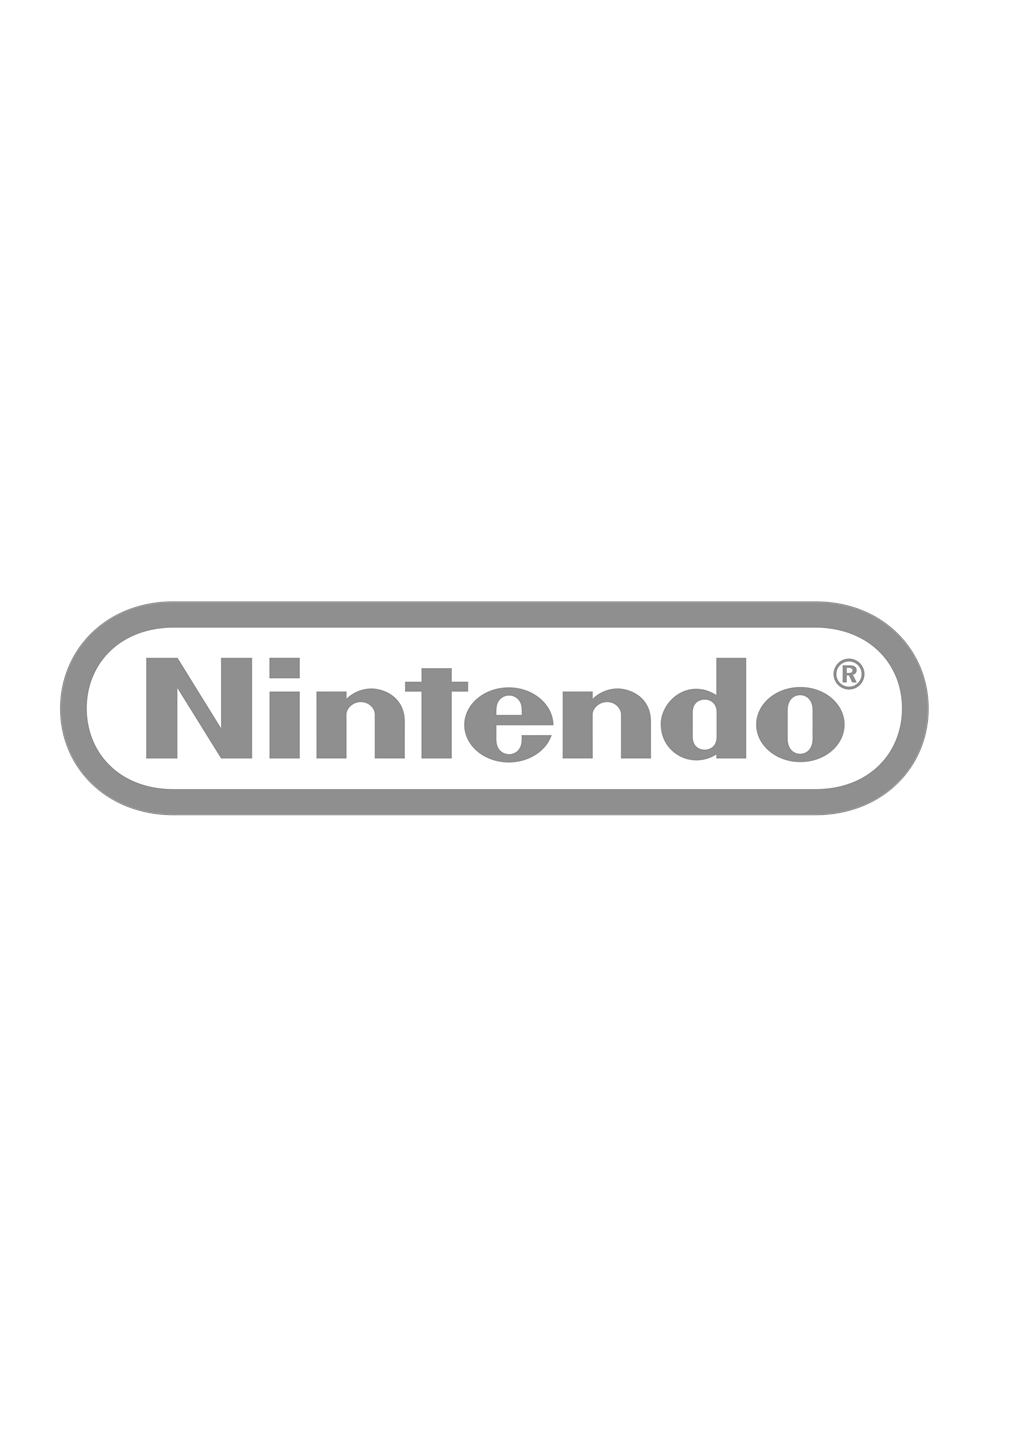 Nintendo logotype, transparent .png, medium, large